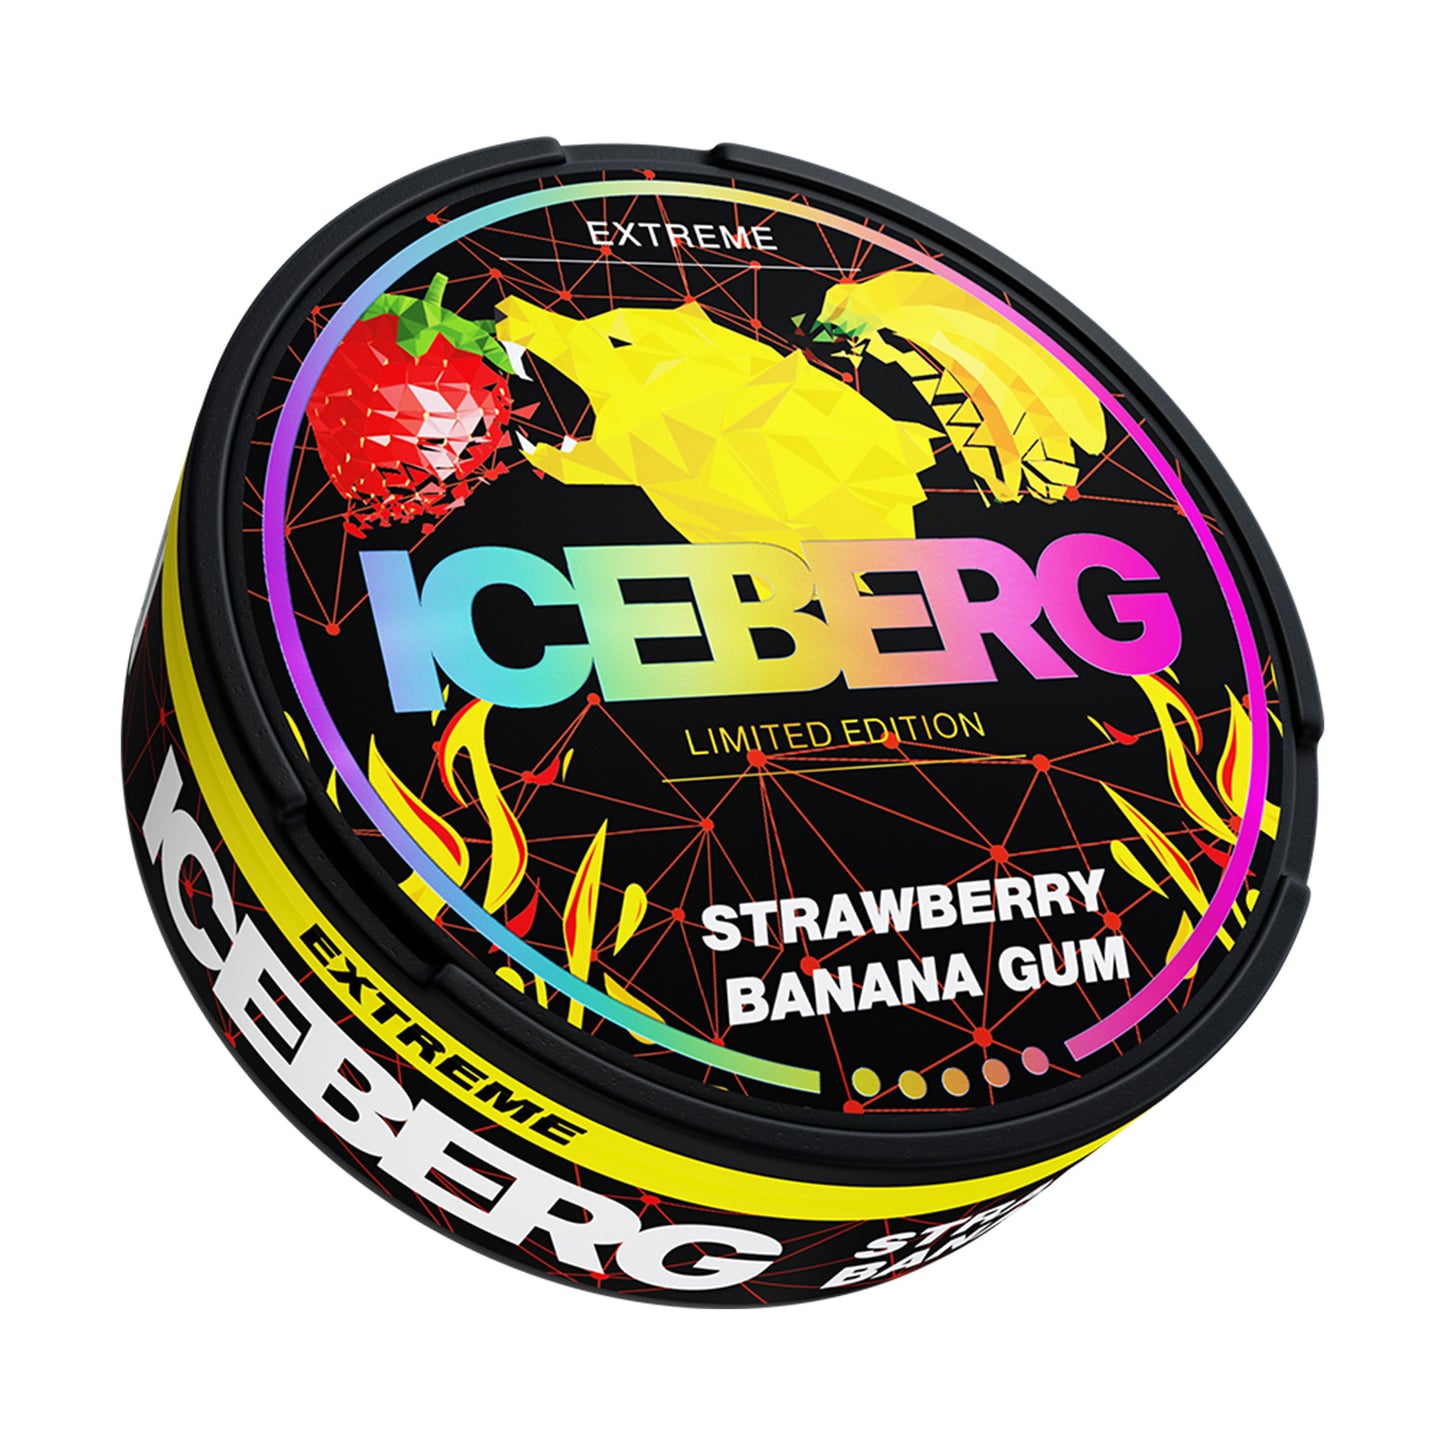 Iceberg Strawberry Banana Gum - 50mg – Snus Town